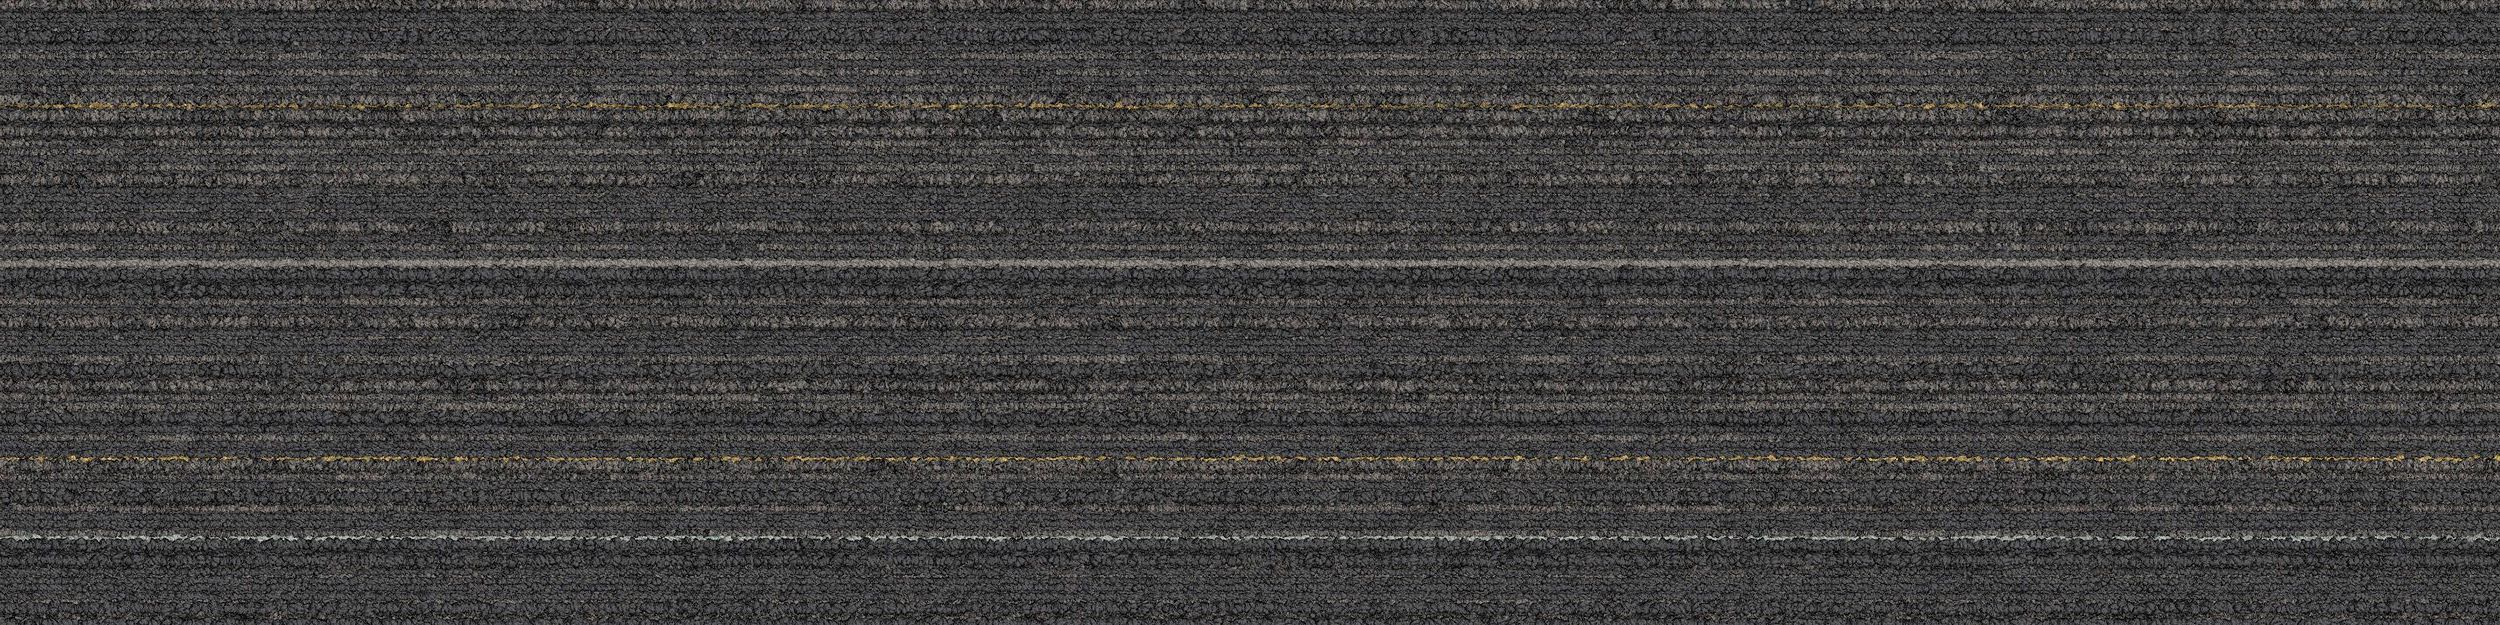 SL920 Carpet Tile In Charcoal Line image number 2